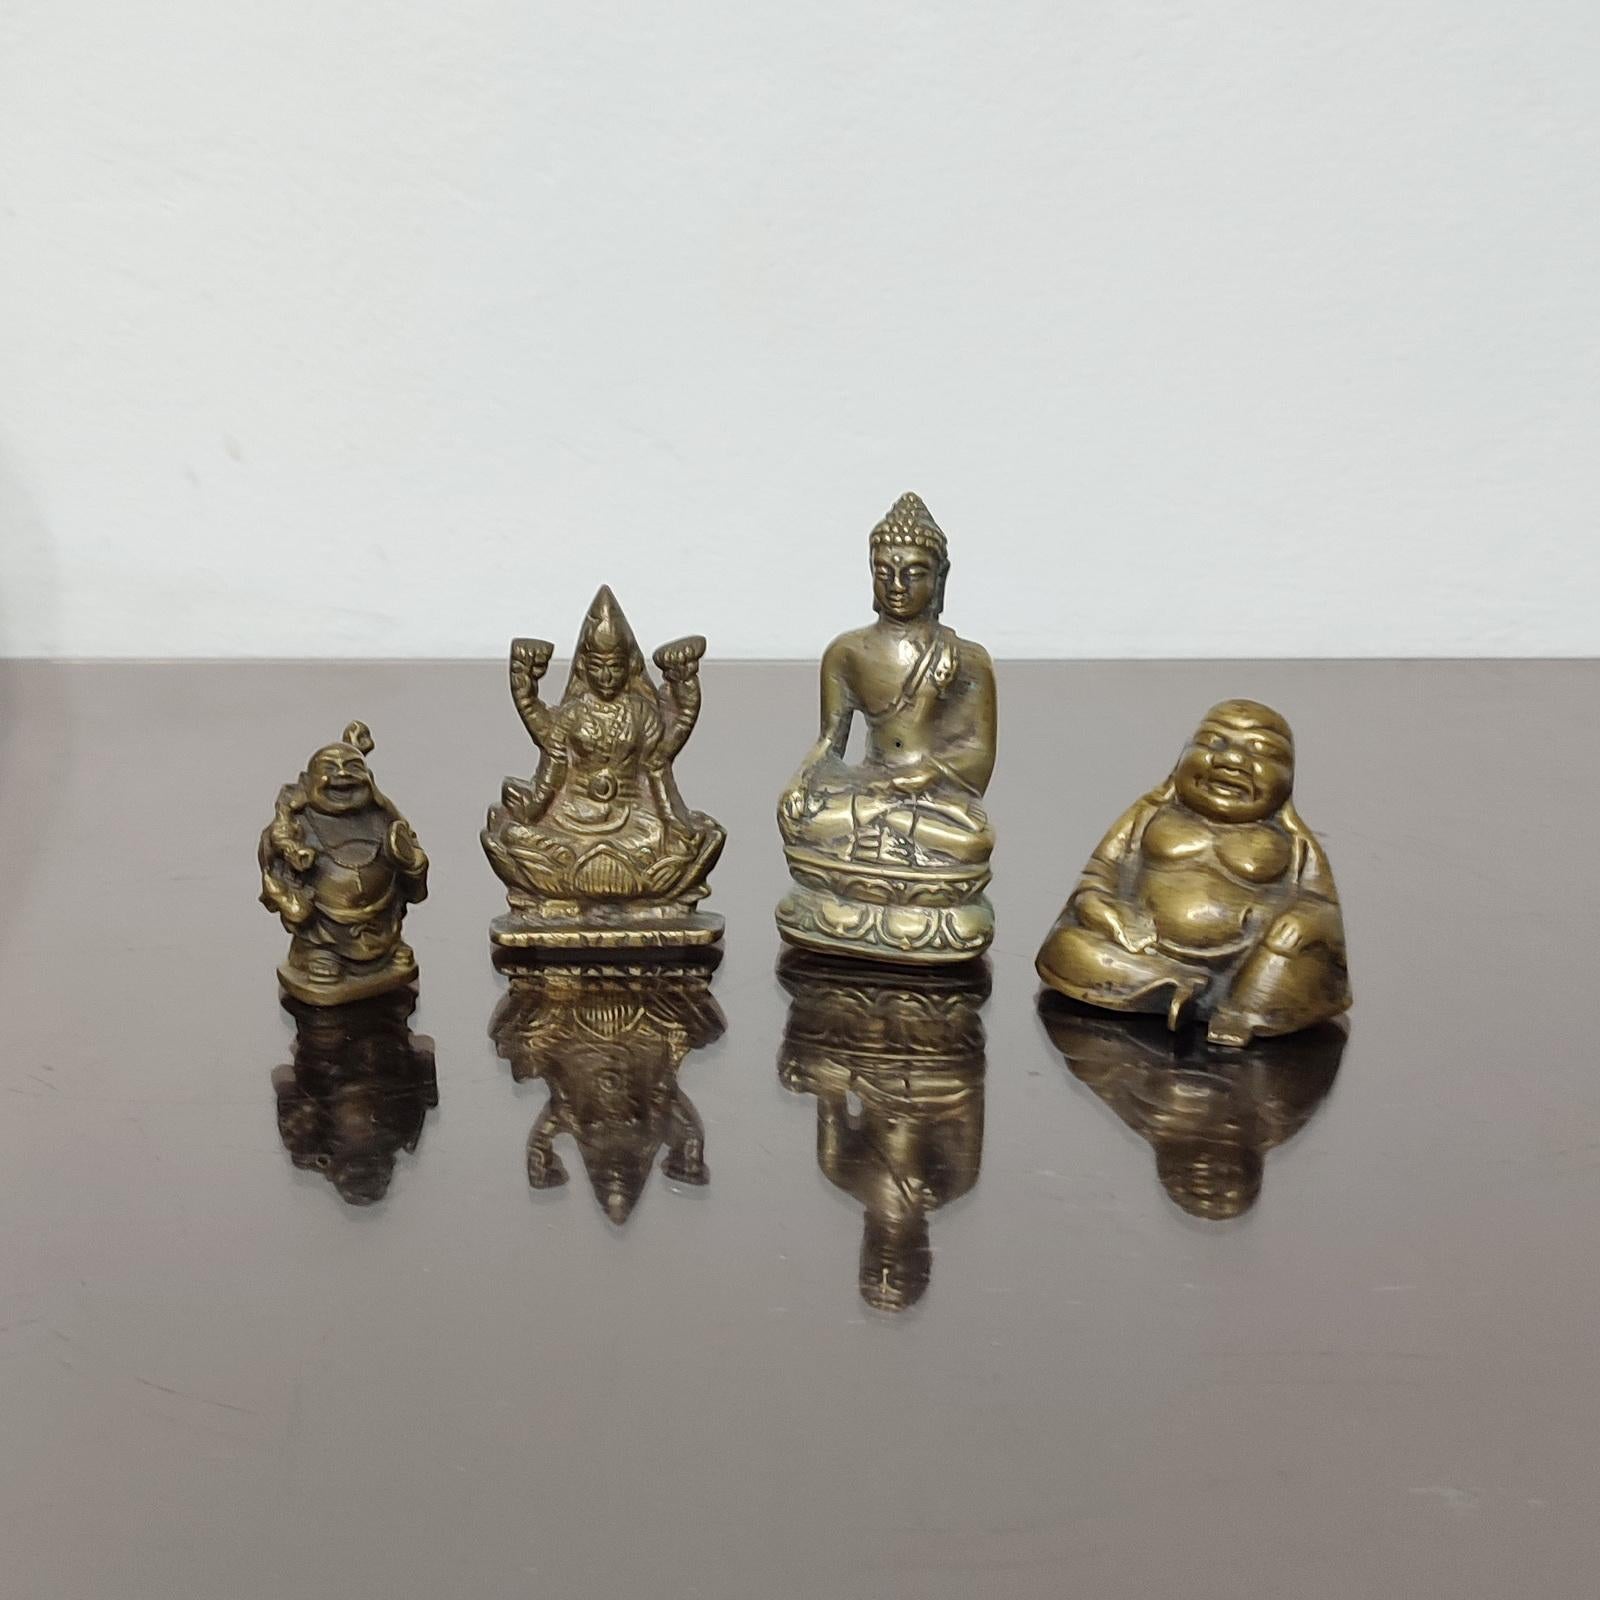 Une belle collection de quatre sculptures miniatures représentant des dieux asiatiques et Bouddha. Condition Vintage.
Dimensions : Hauteur de 5 à 9 cm.